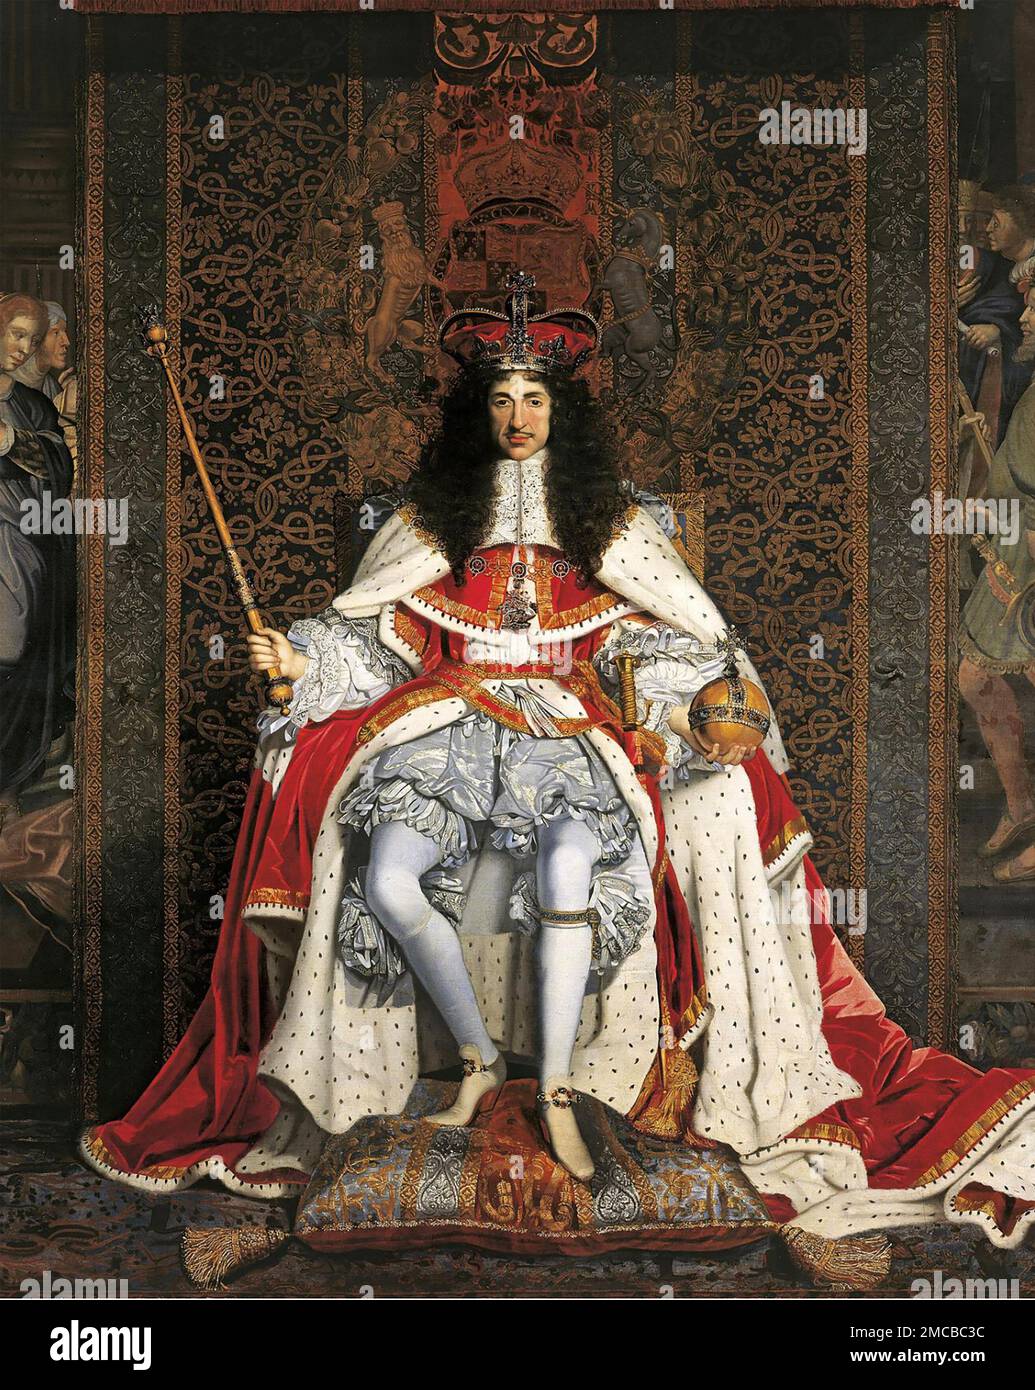 CHARLES II OF ENGLAND (1630-1685)   Coronation portrait 1661 Stock Photo